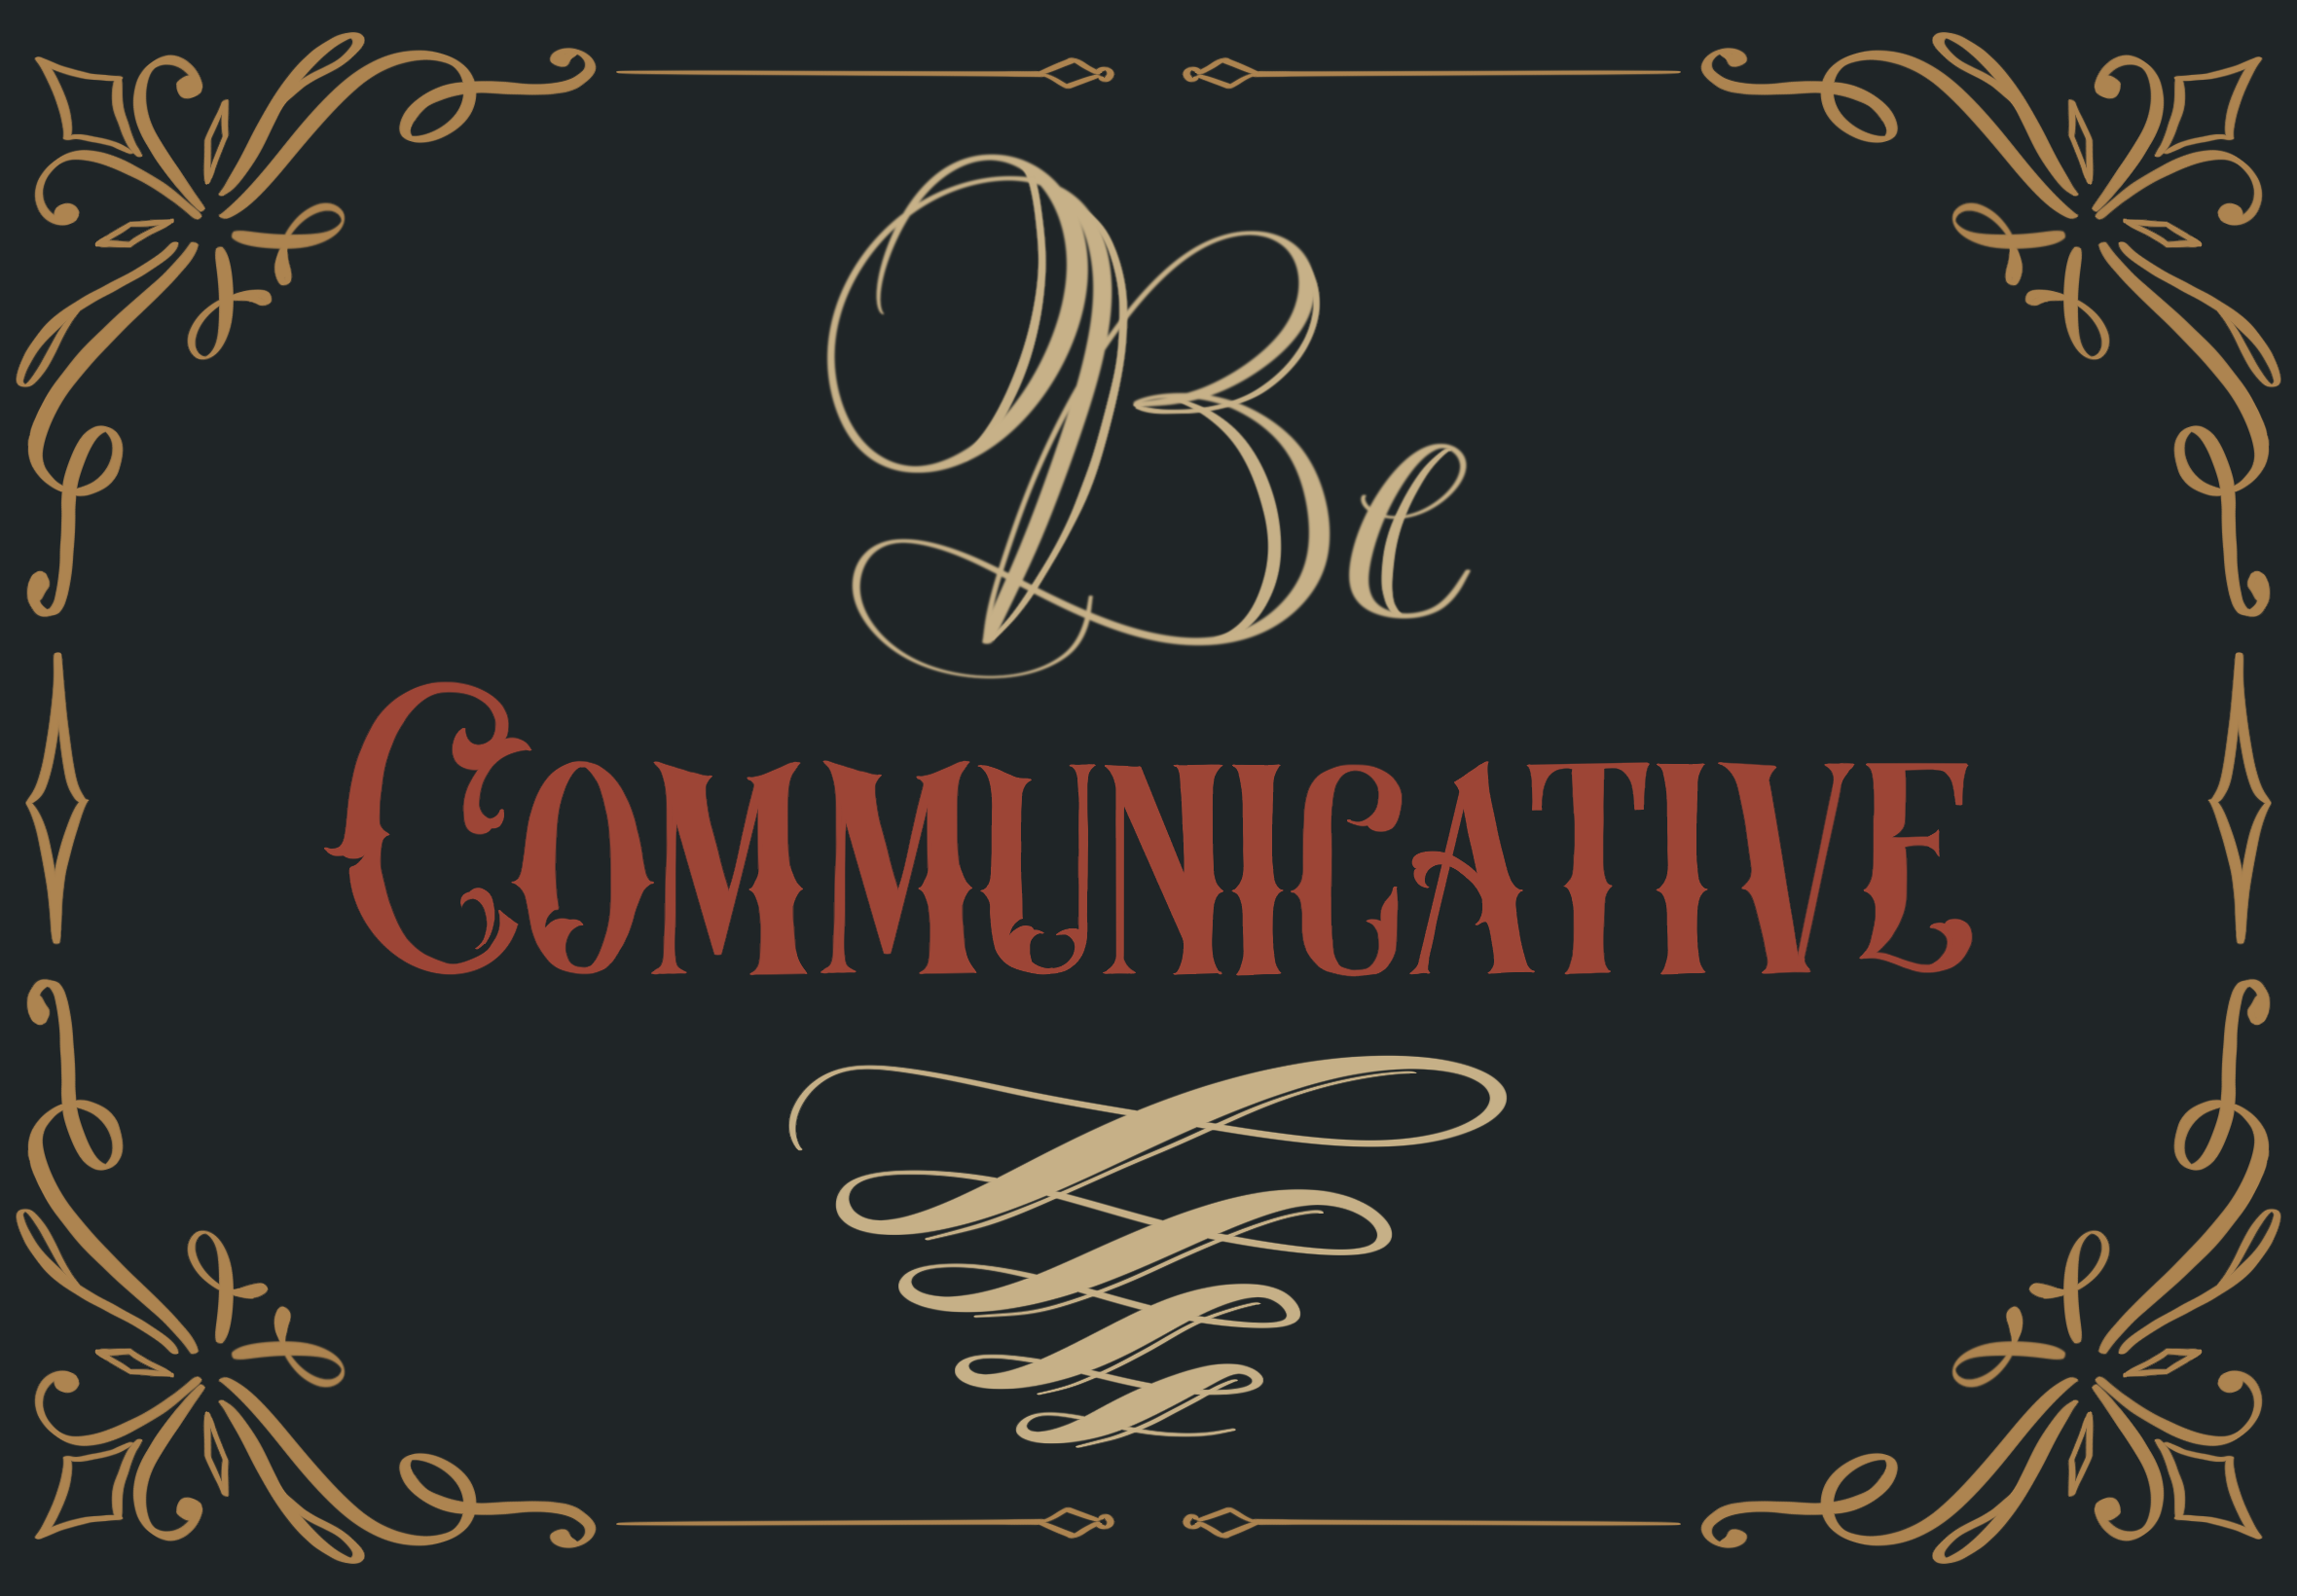 Be Communicative